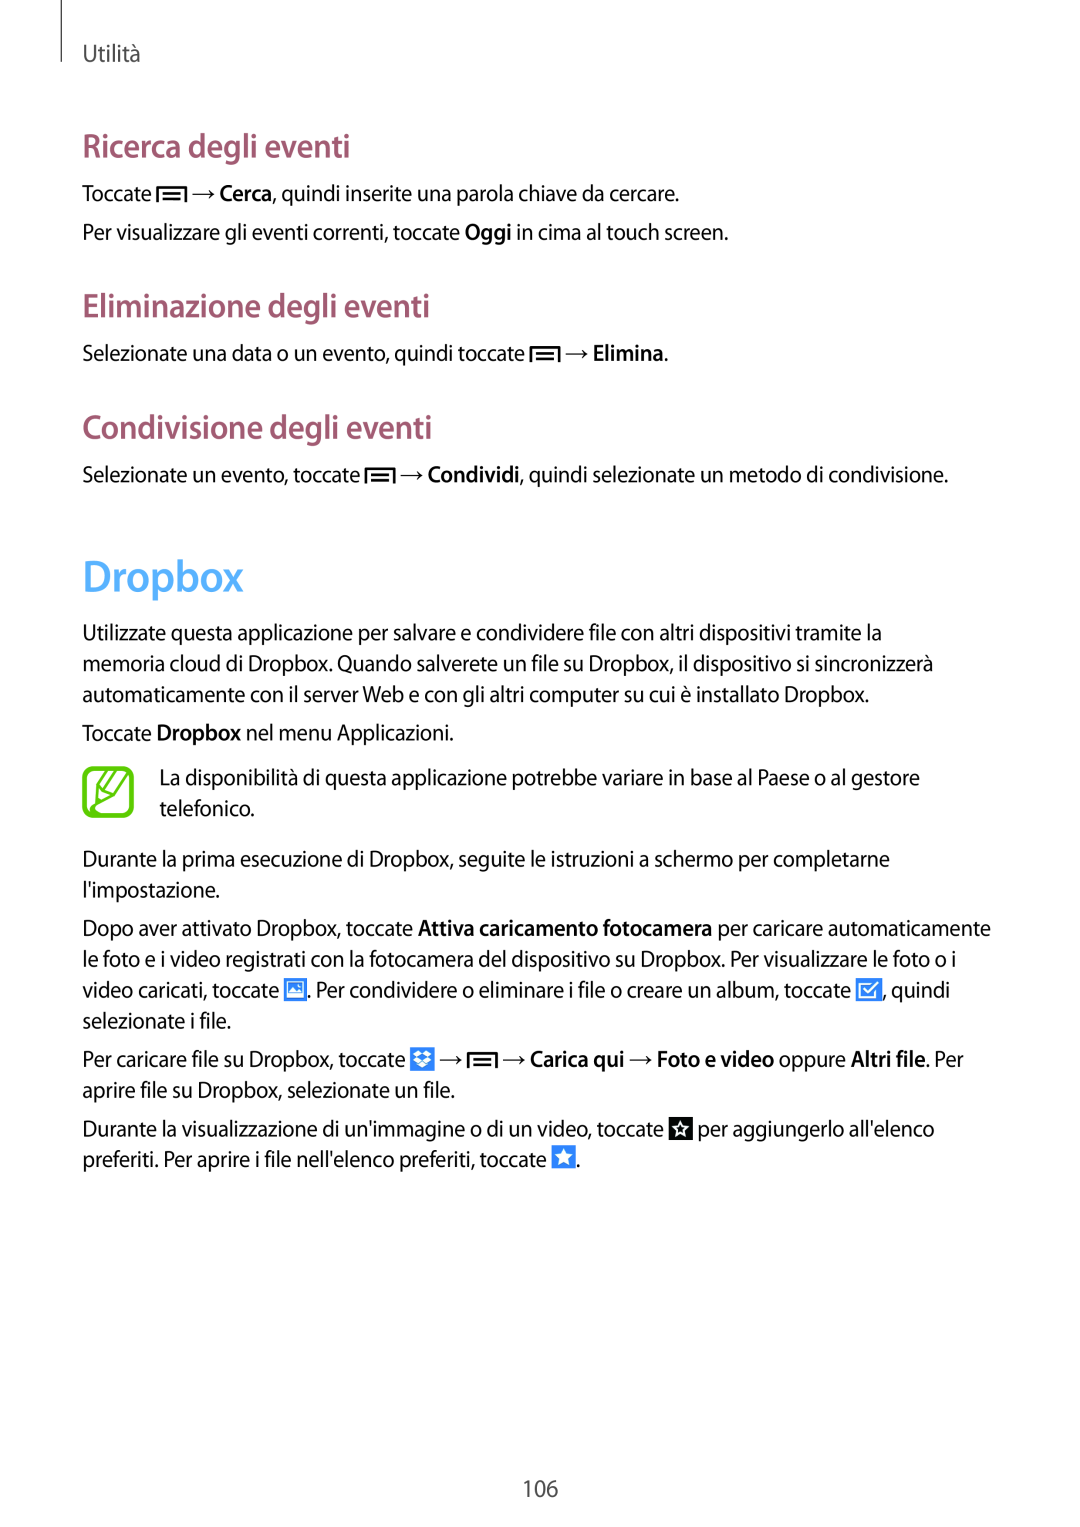 Samsung GT-N7100TADOMN manual Dropbox, Ricerca degli eventi, Eliminazione degli eventi, Condivisione degli eventi, Utilità 